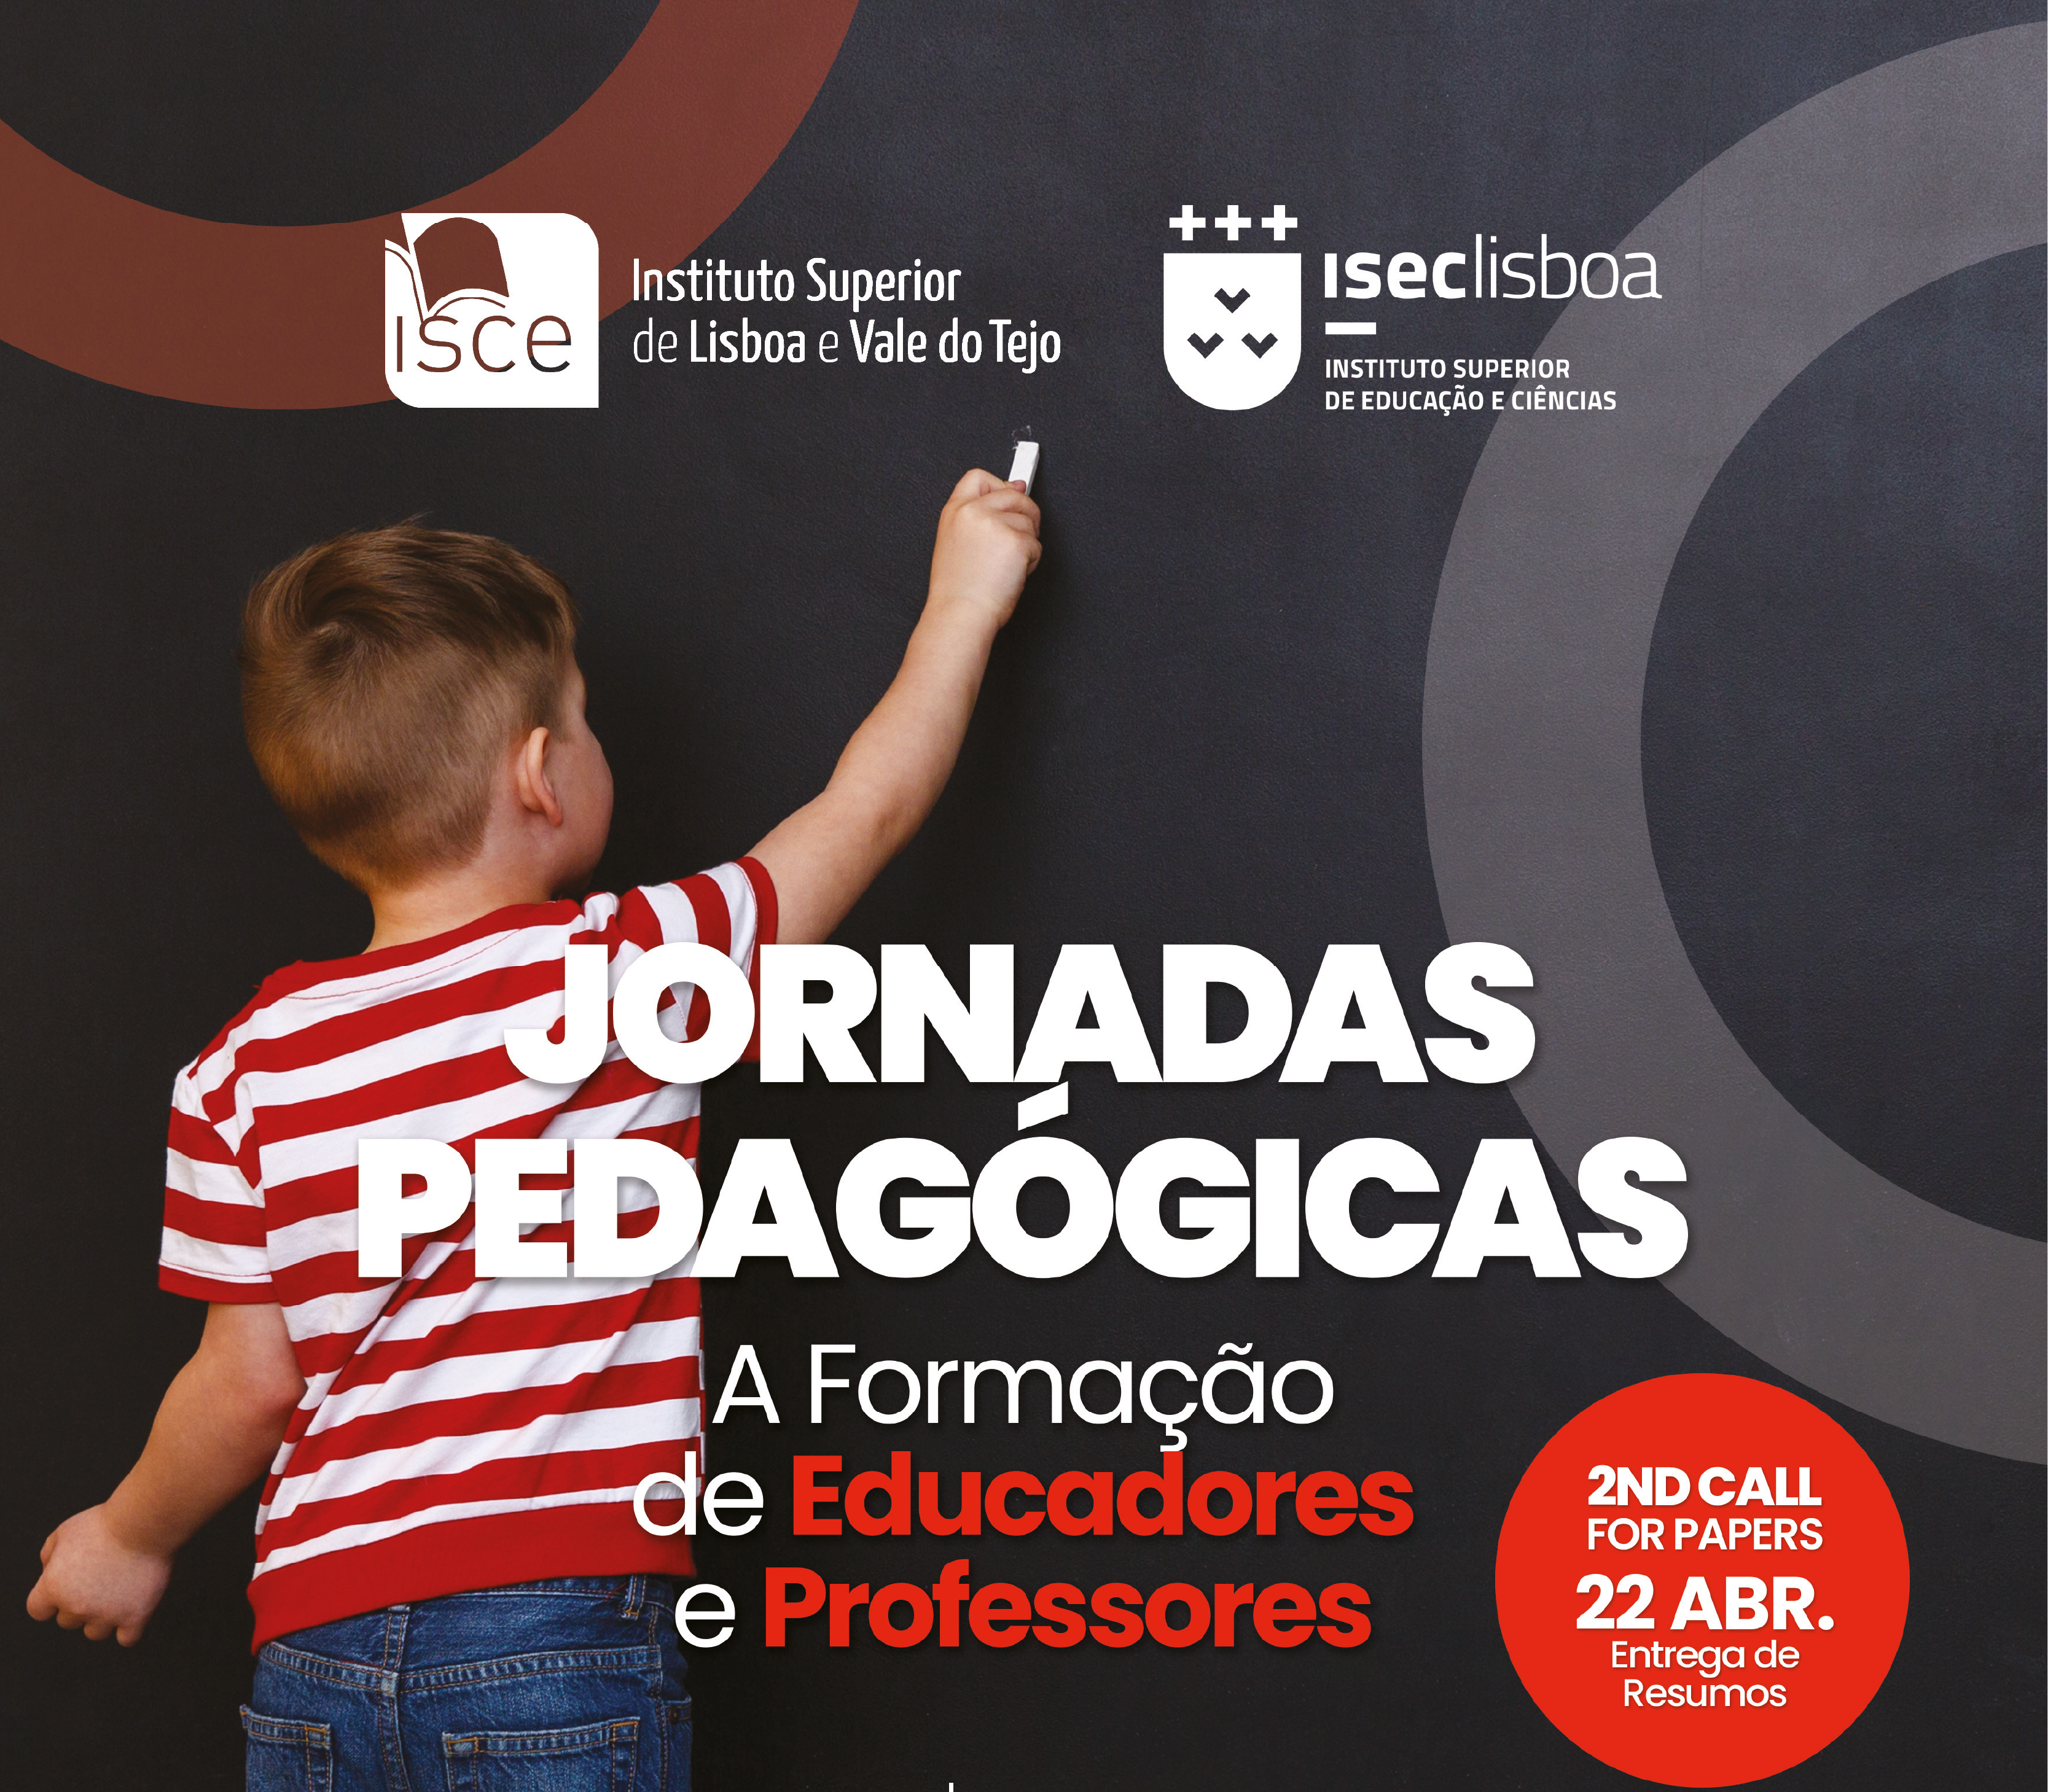 Jornadas Pedagógicas “A Formação de Educadores e Professores”